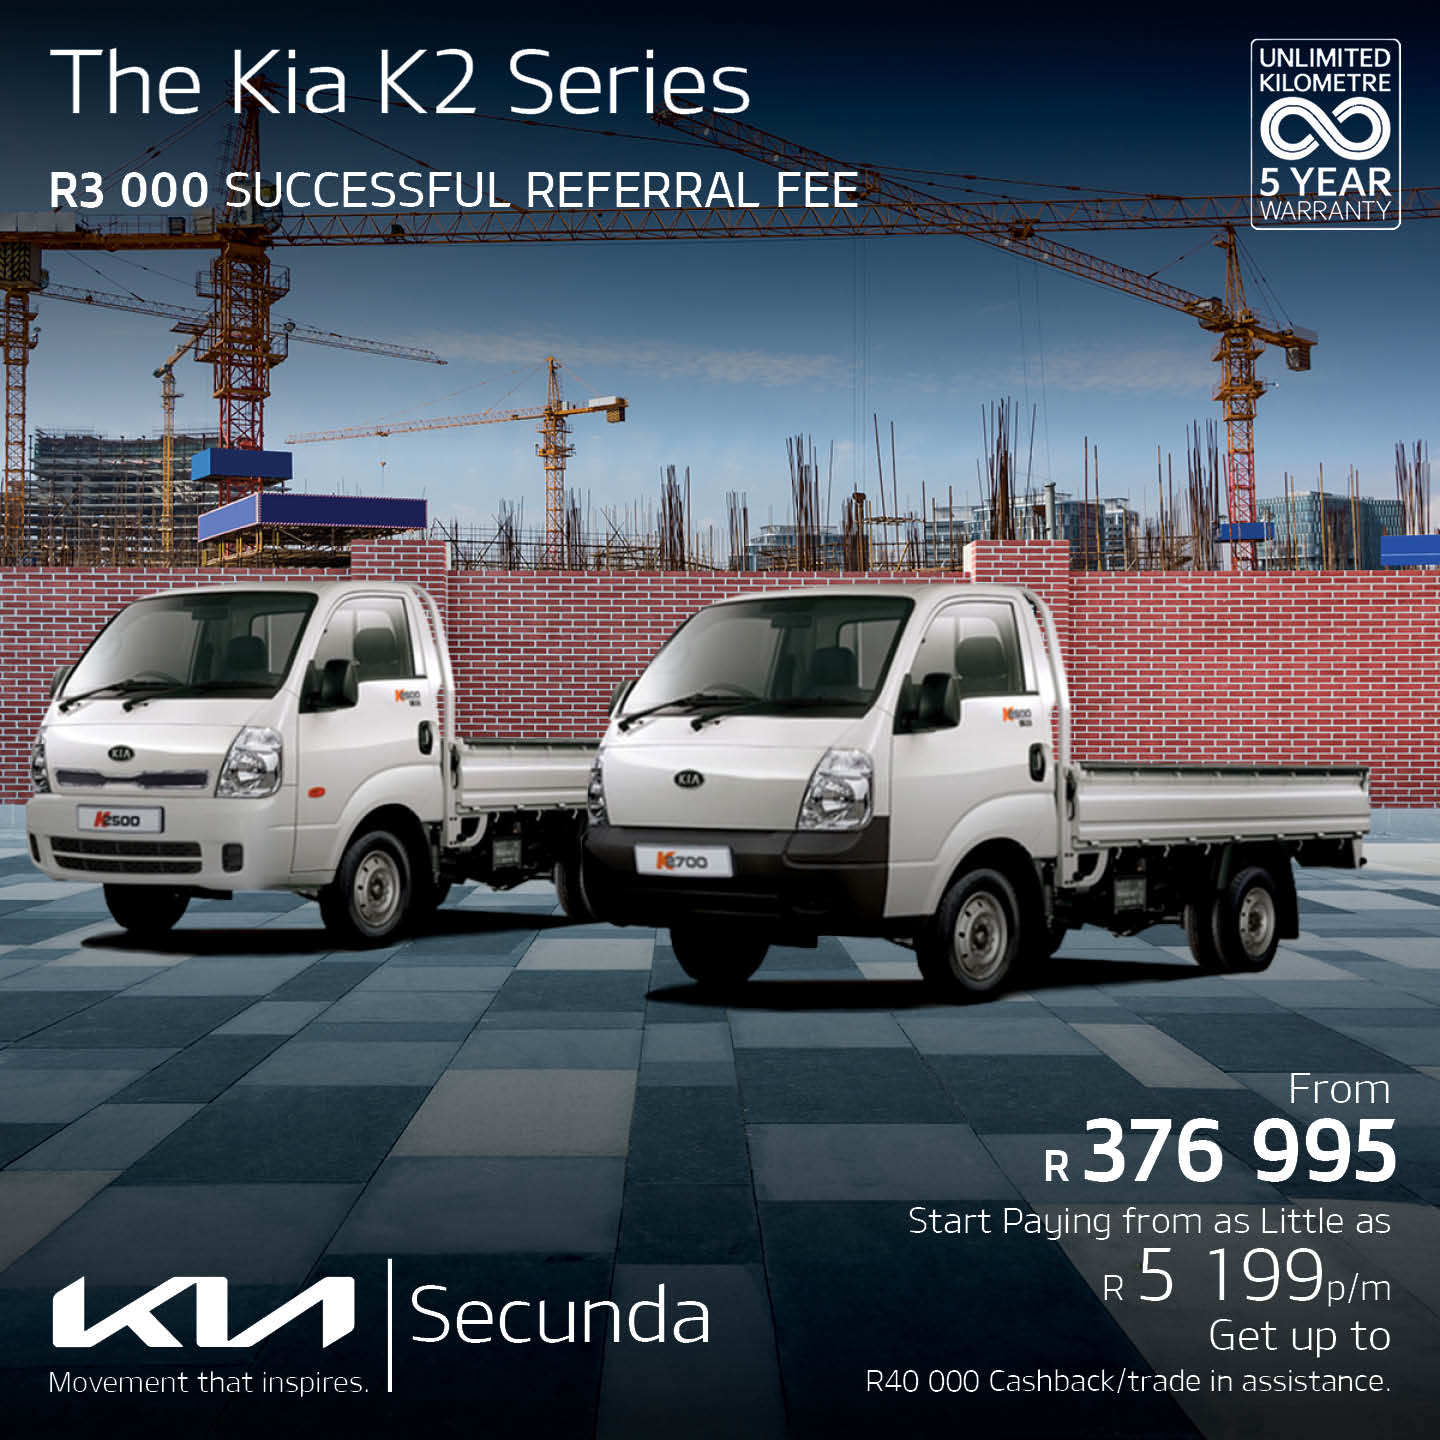 KIA K2 Series image from Eastvaal Motors